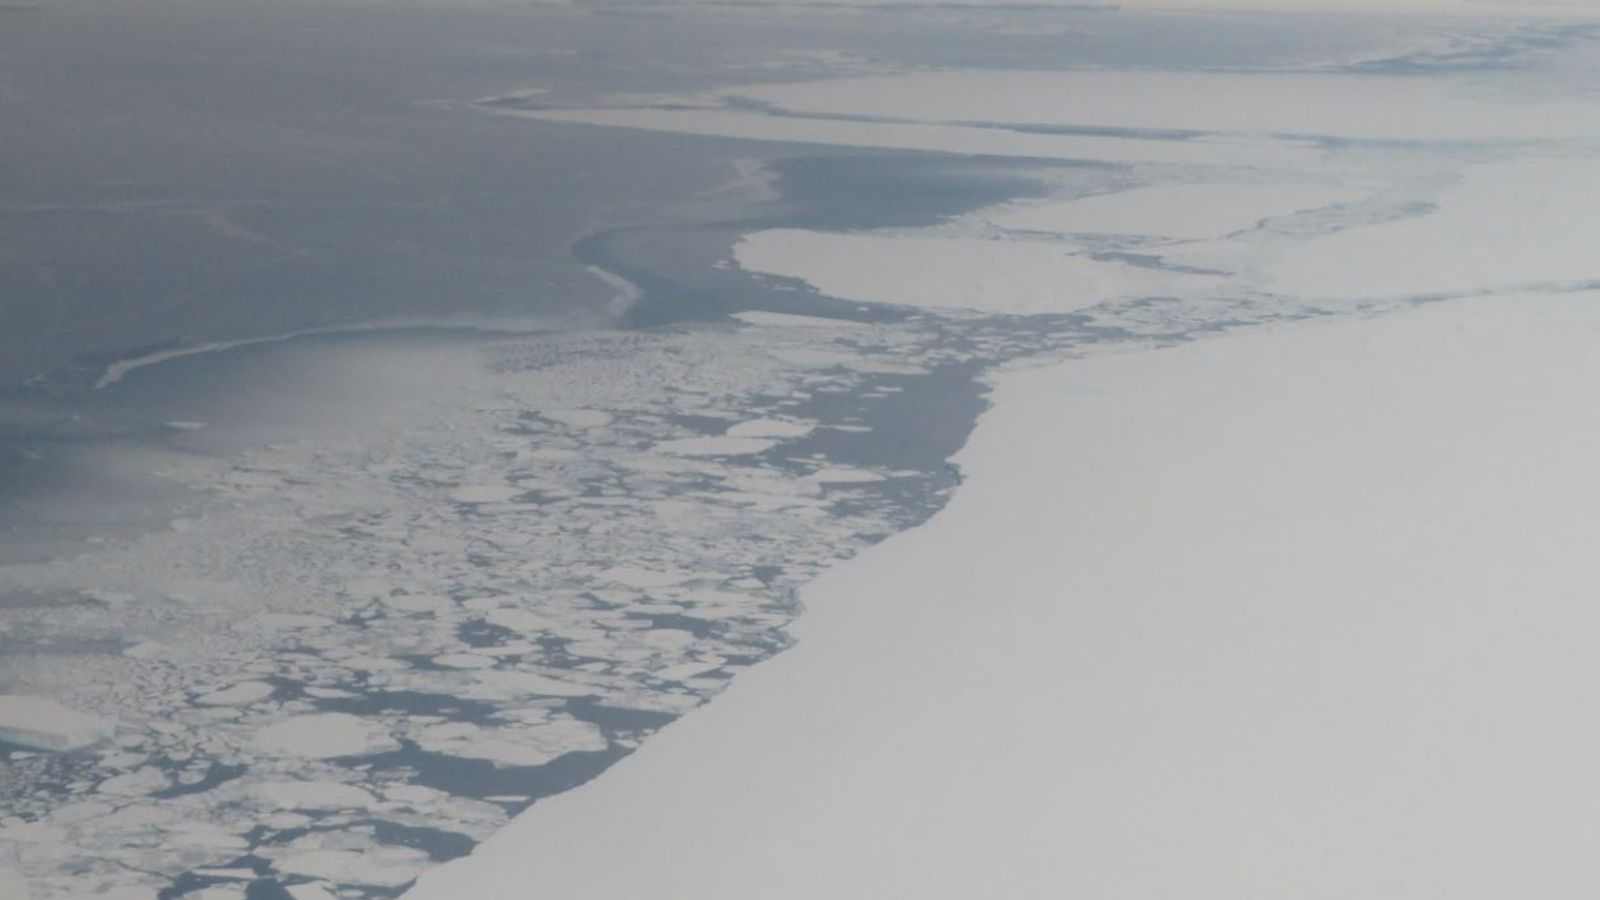 رئيس الأرصاد الجوية في الأمم المتحدة يخسر معركته لوقف ذوبان الأنهار الجليدية وارتفاع منسوب مياه البحر  اخبار العالم